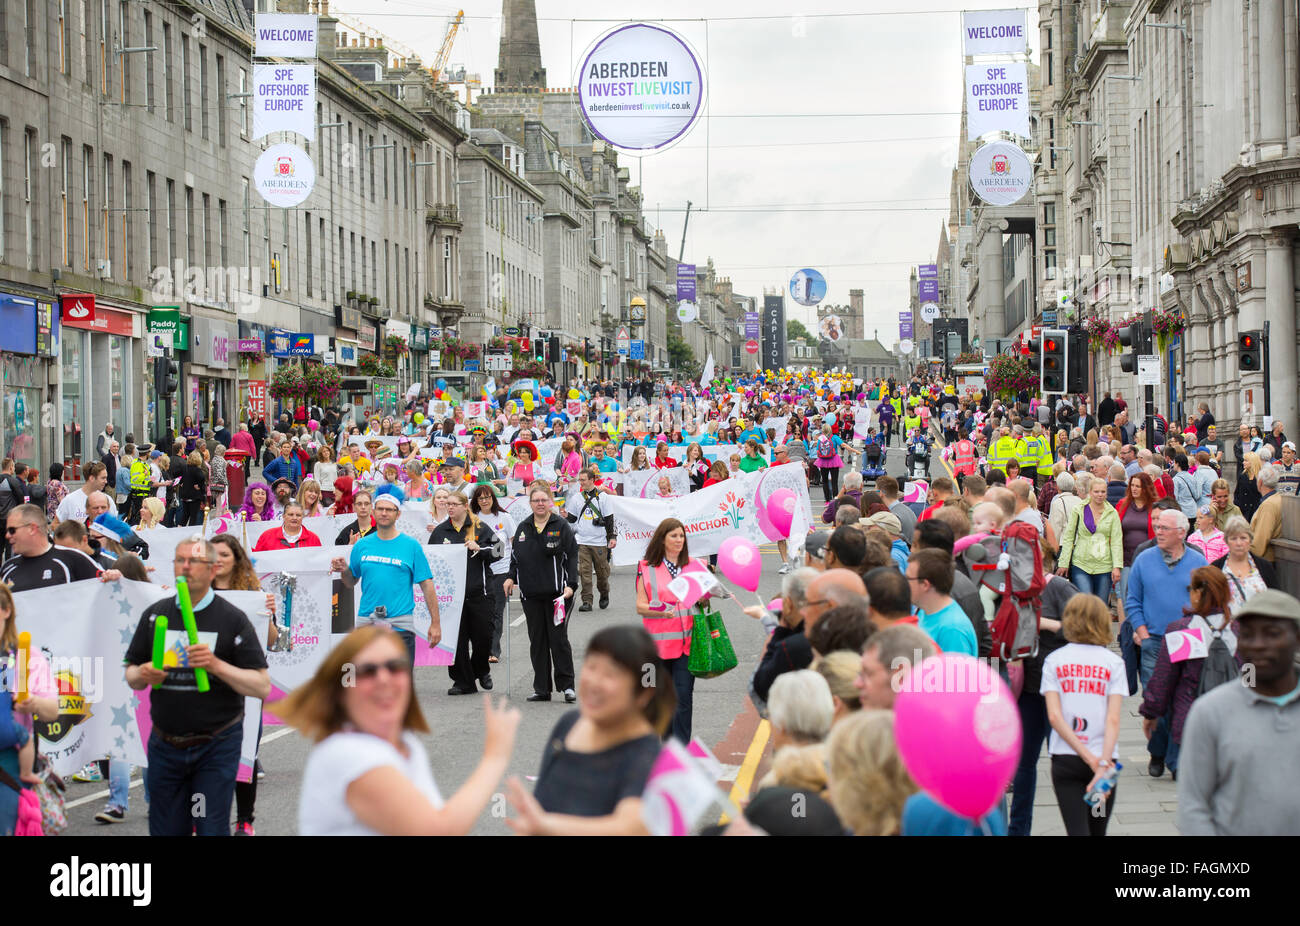 Les gens dans la rue à l'assemblée annuelle de l'Union célèbrent la parade d'Aberdeen dans la ville d'Aberdeen, Écosse, Royaume-Uni Banque D'Images